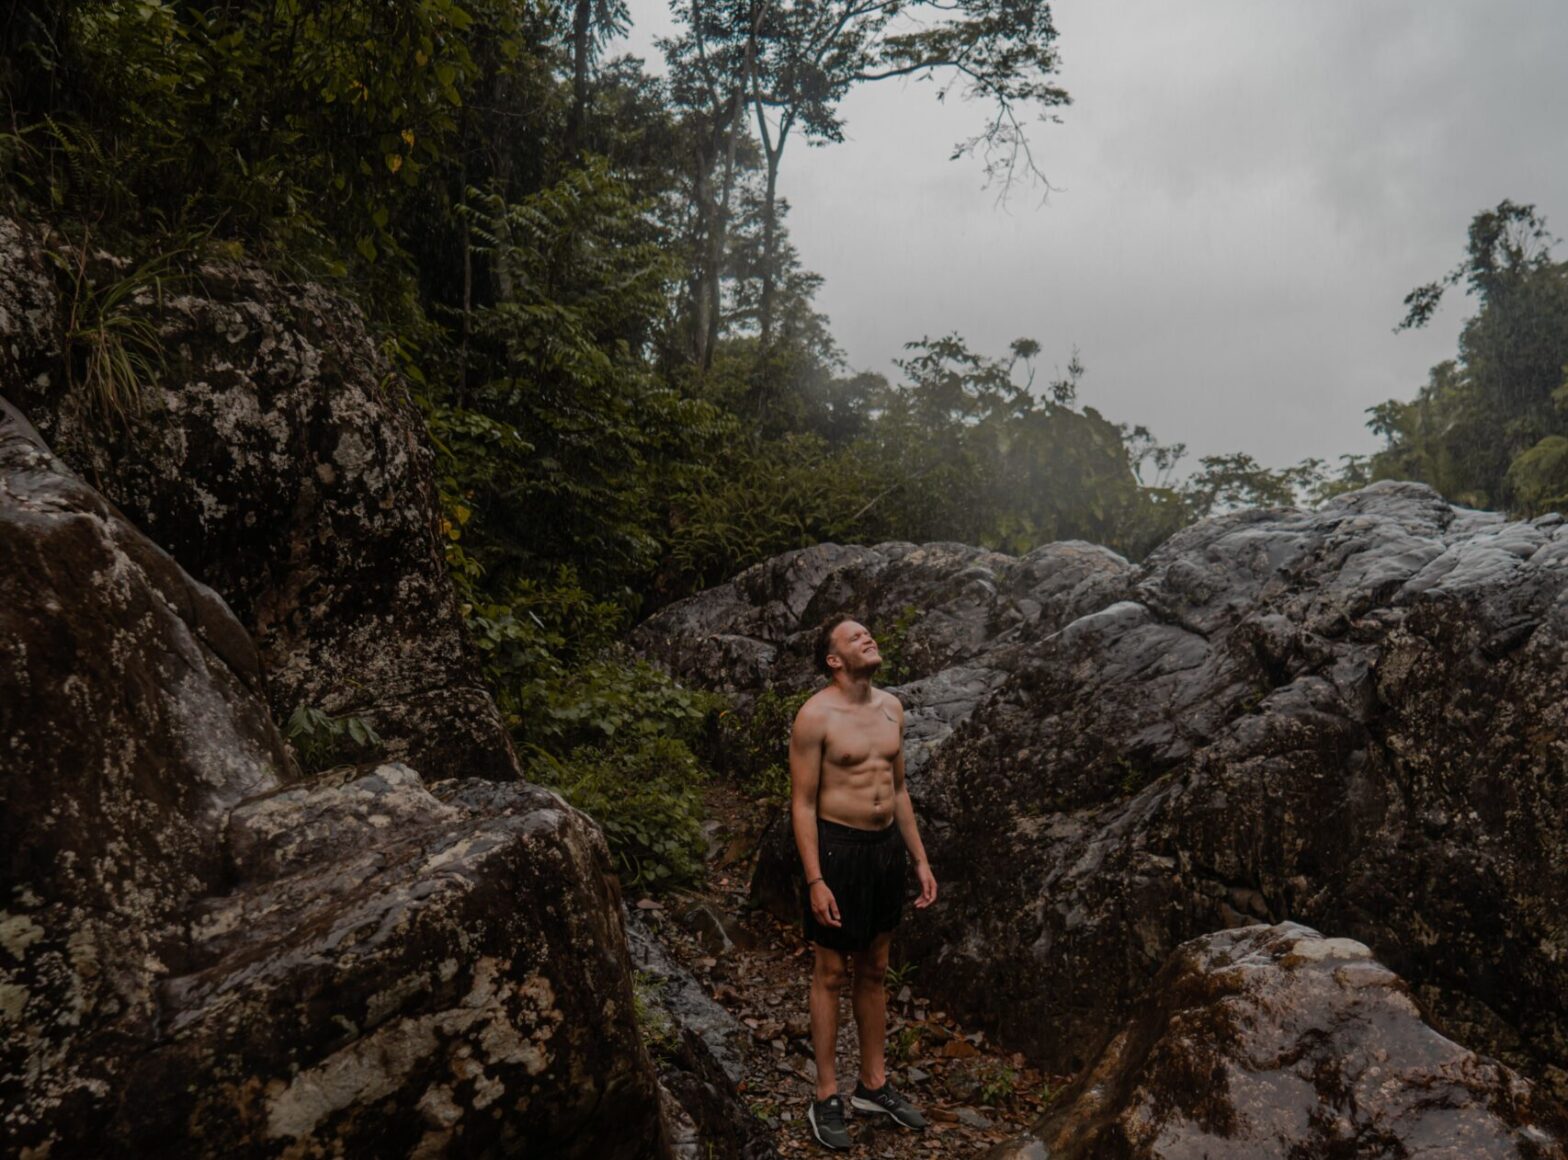 Cerro de Punta: A Getaway in Puerto Rico for Outdoor Lovers